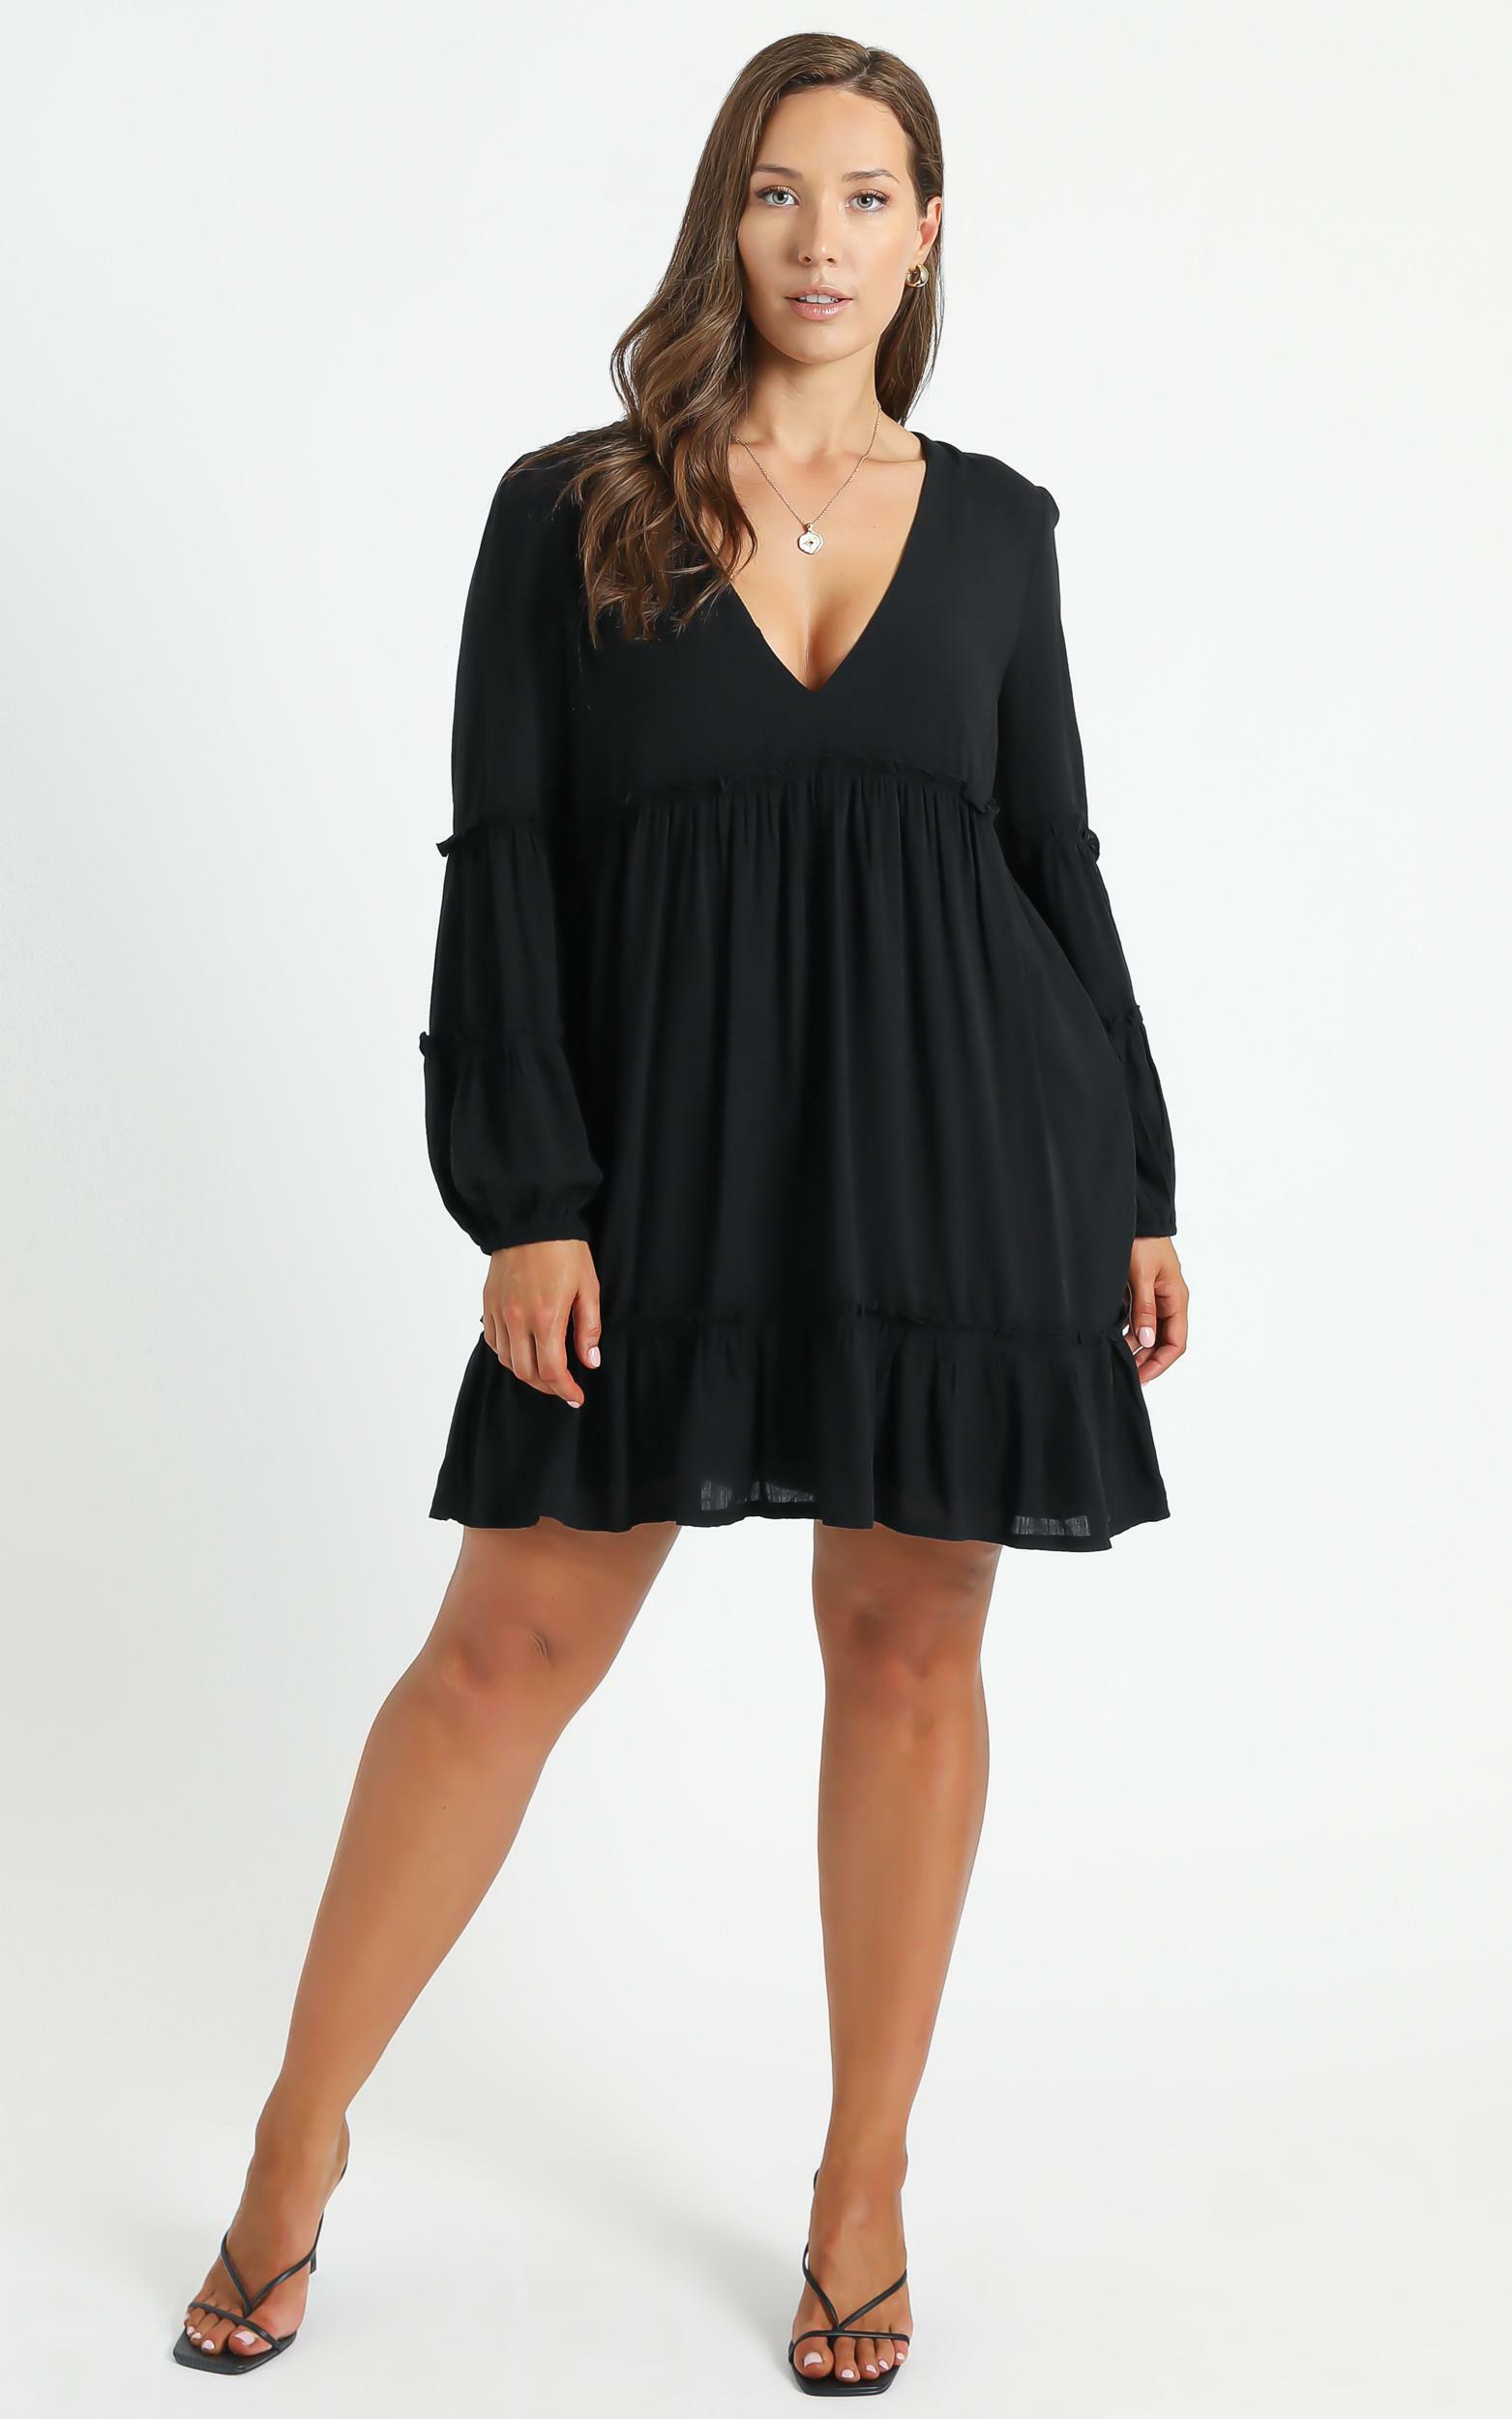 Summer Soul Dress in Black - 20, BLK1, hi-res image number null